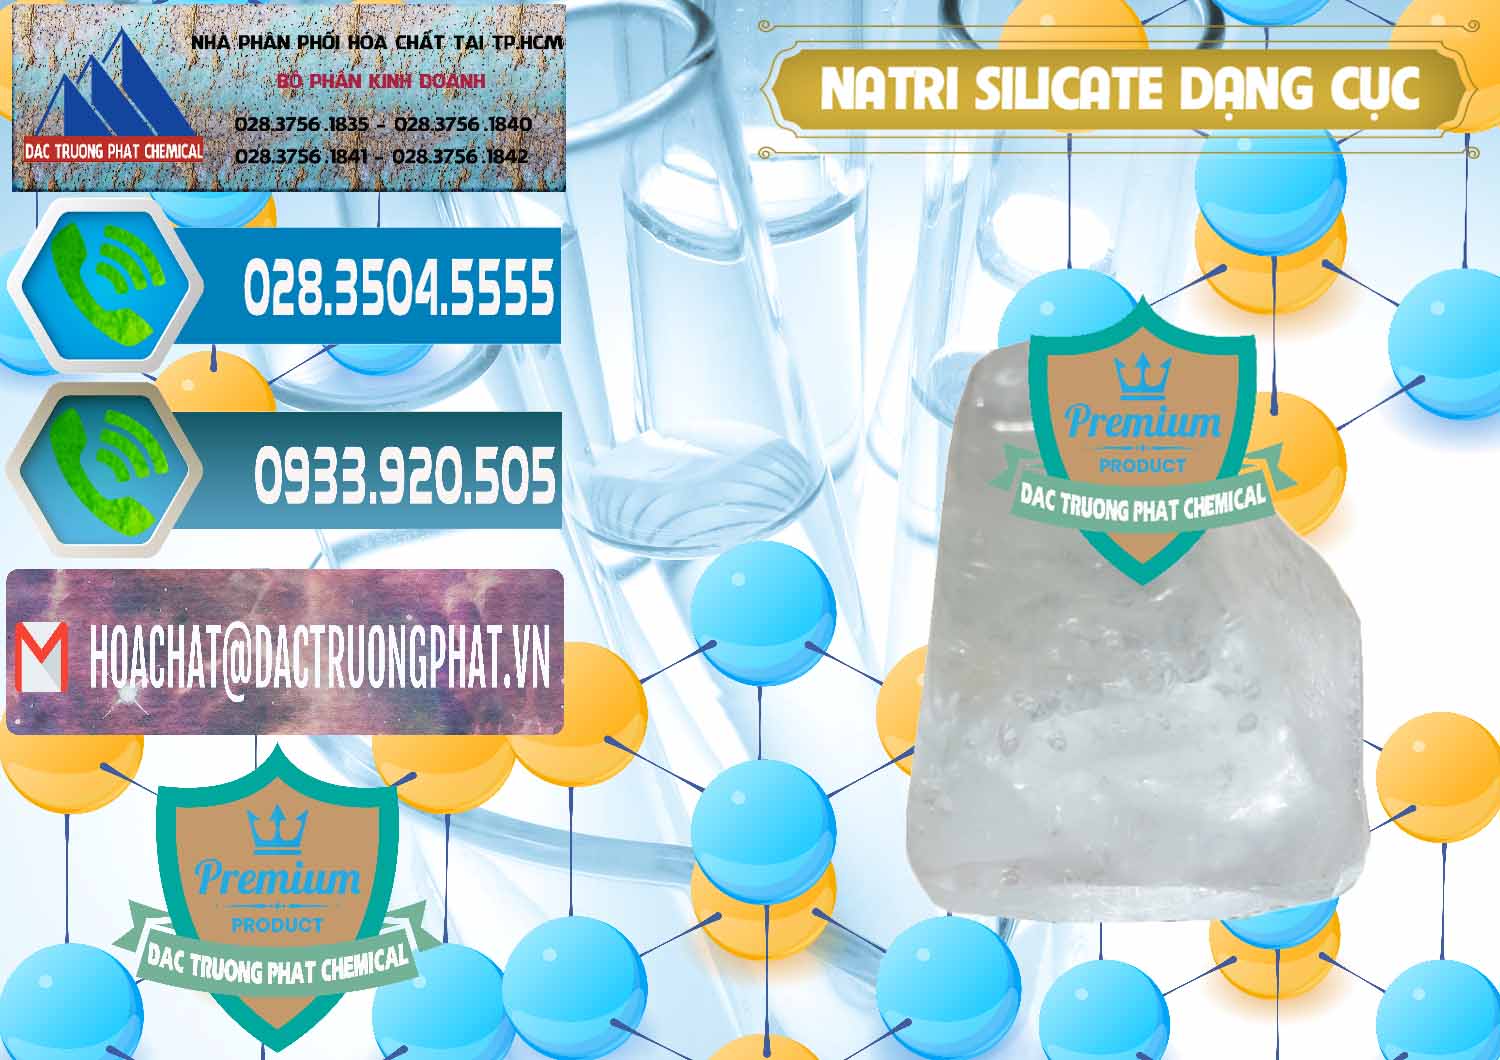 Nơi cung cấp và bán Natri Silicate - Na2SiO3 - Keo Silicate Dạng Cục Ấn Độ India - 0382 - Chuyên phân phối - kinh doanh hóa chất tại TP.HCM - congtyhoachat.net